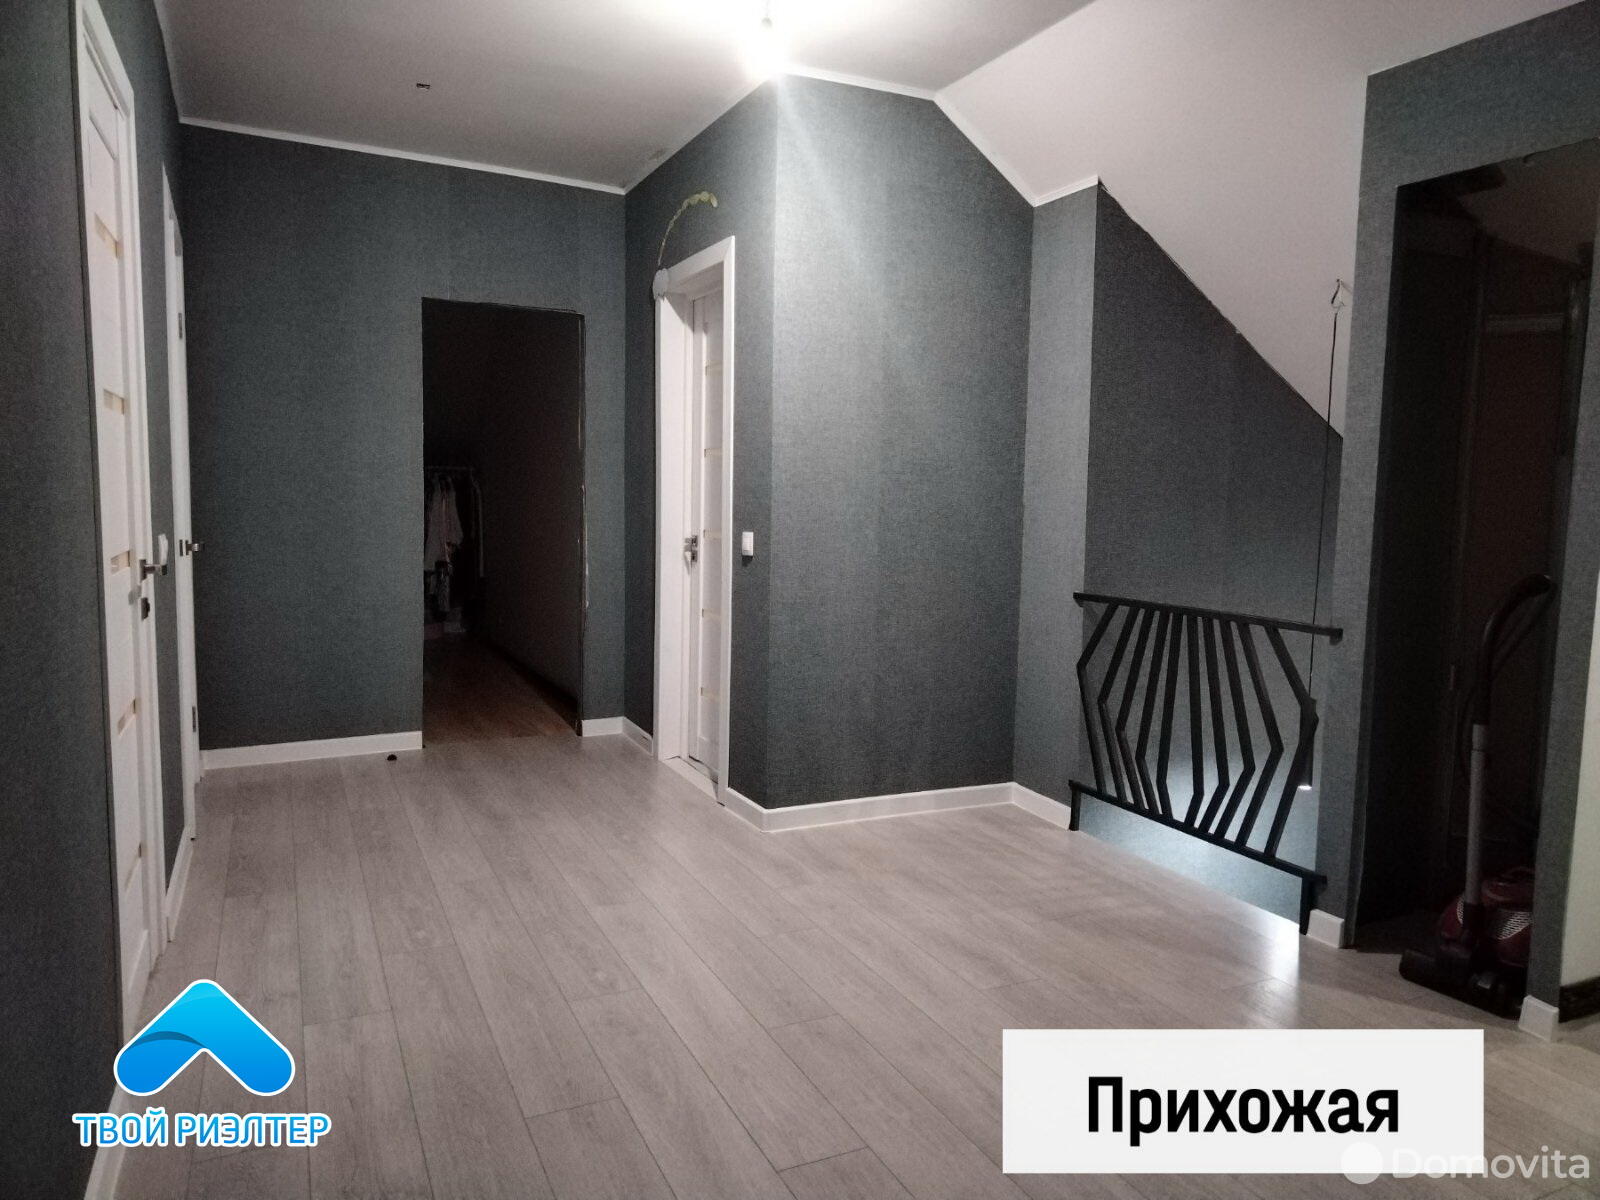 Продажа 2-этажного дома в Наровчизне, Гомельская область ул. Коростеньская, 96900USD, код 630058 - фото 6